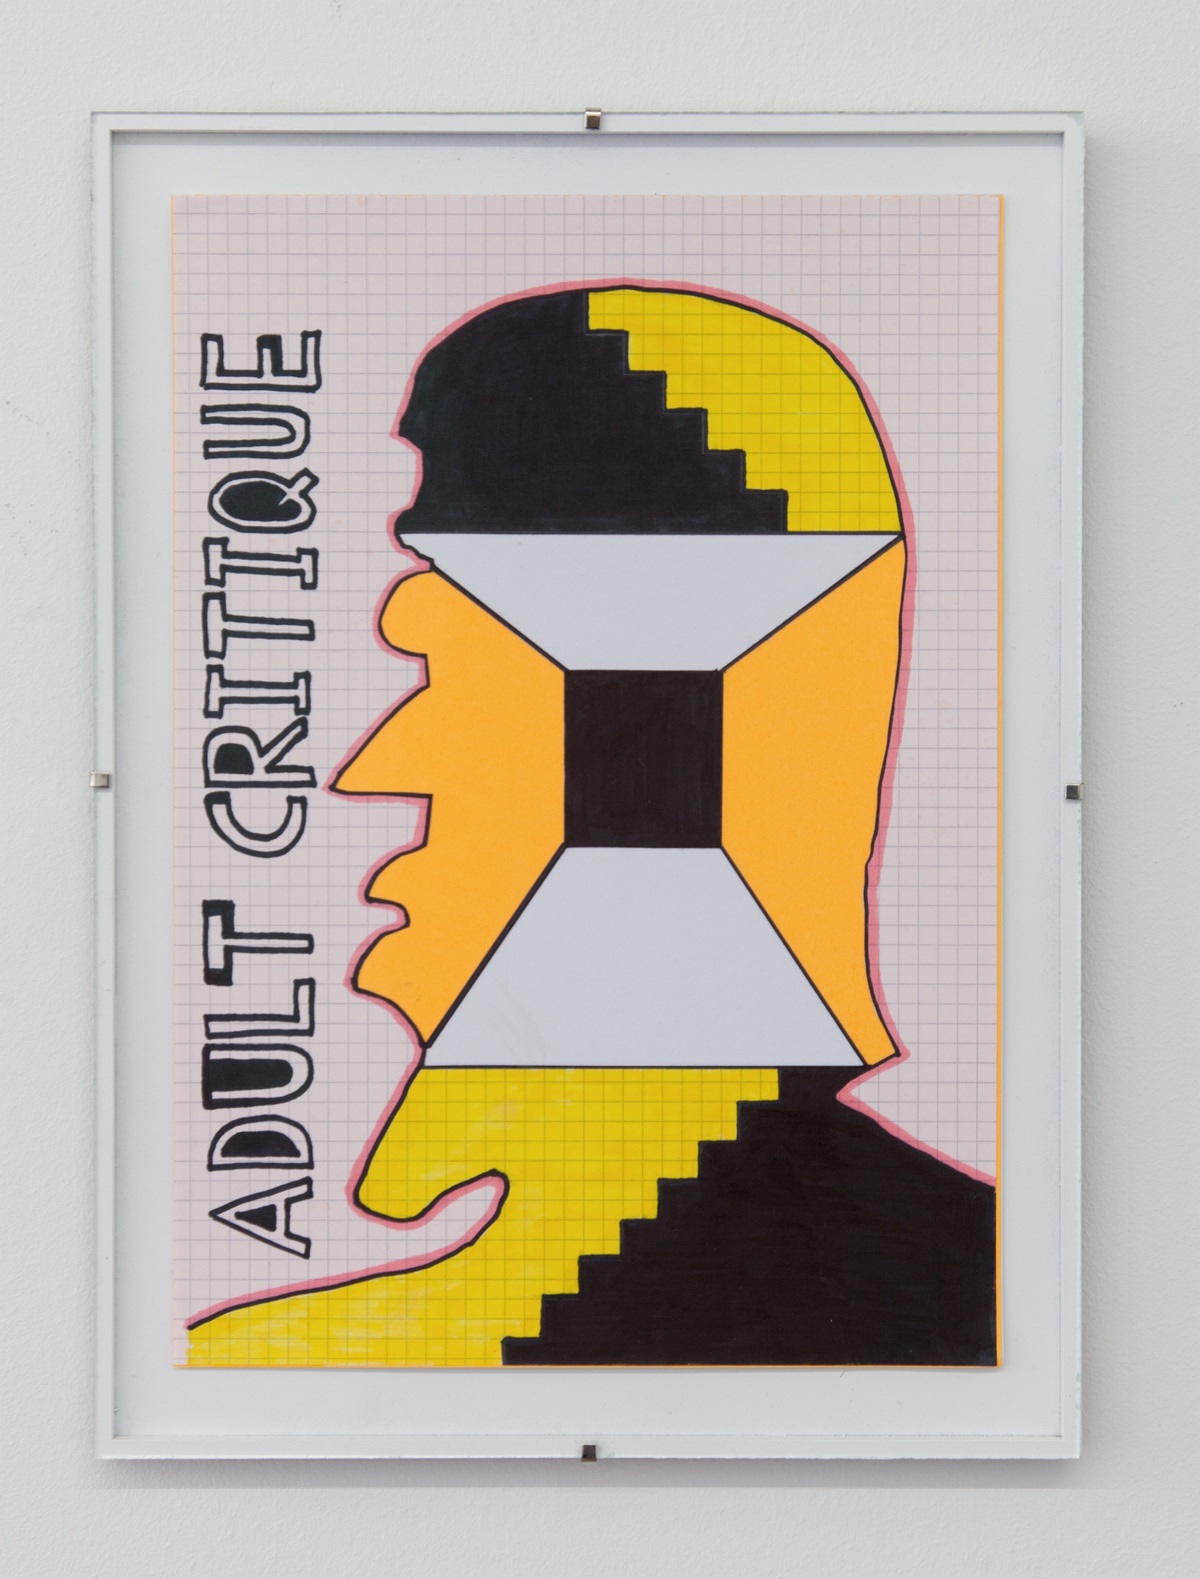 Richard Sides, Vapid mind games, 2019card, paper, marker, adhesive25 x 34 cm (framed)